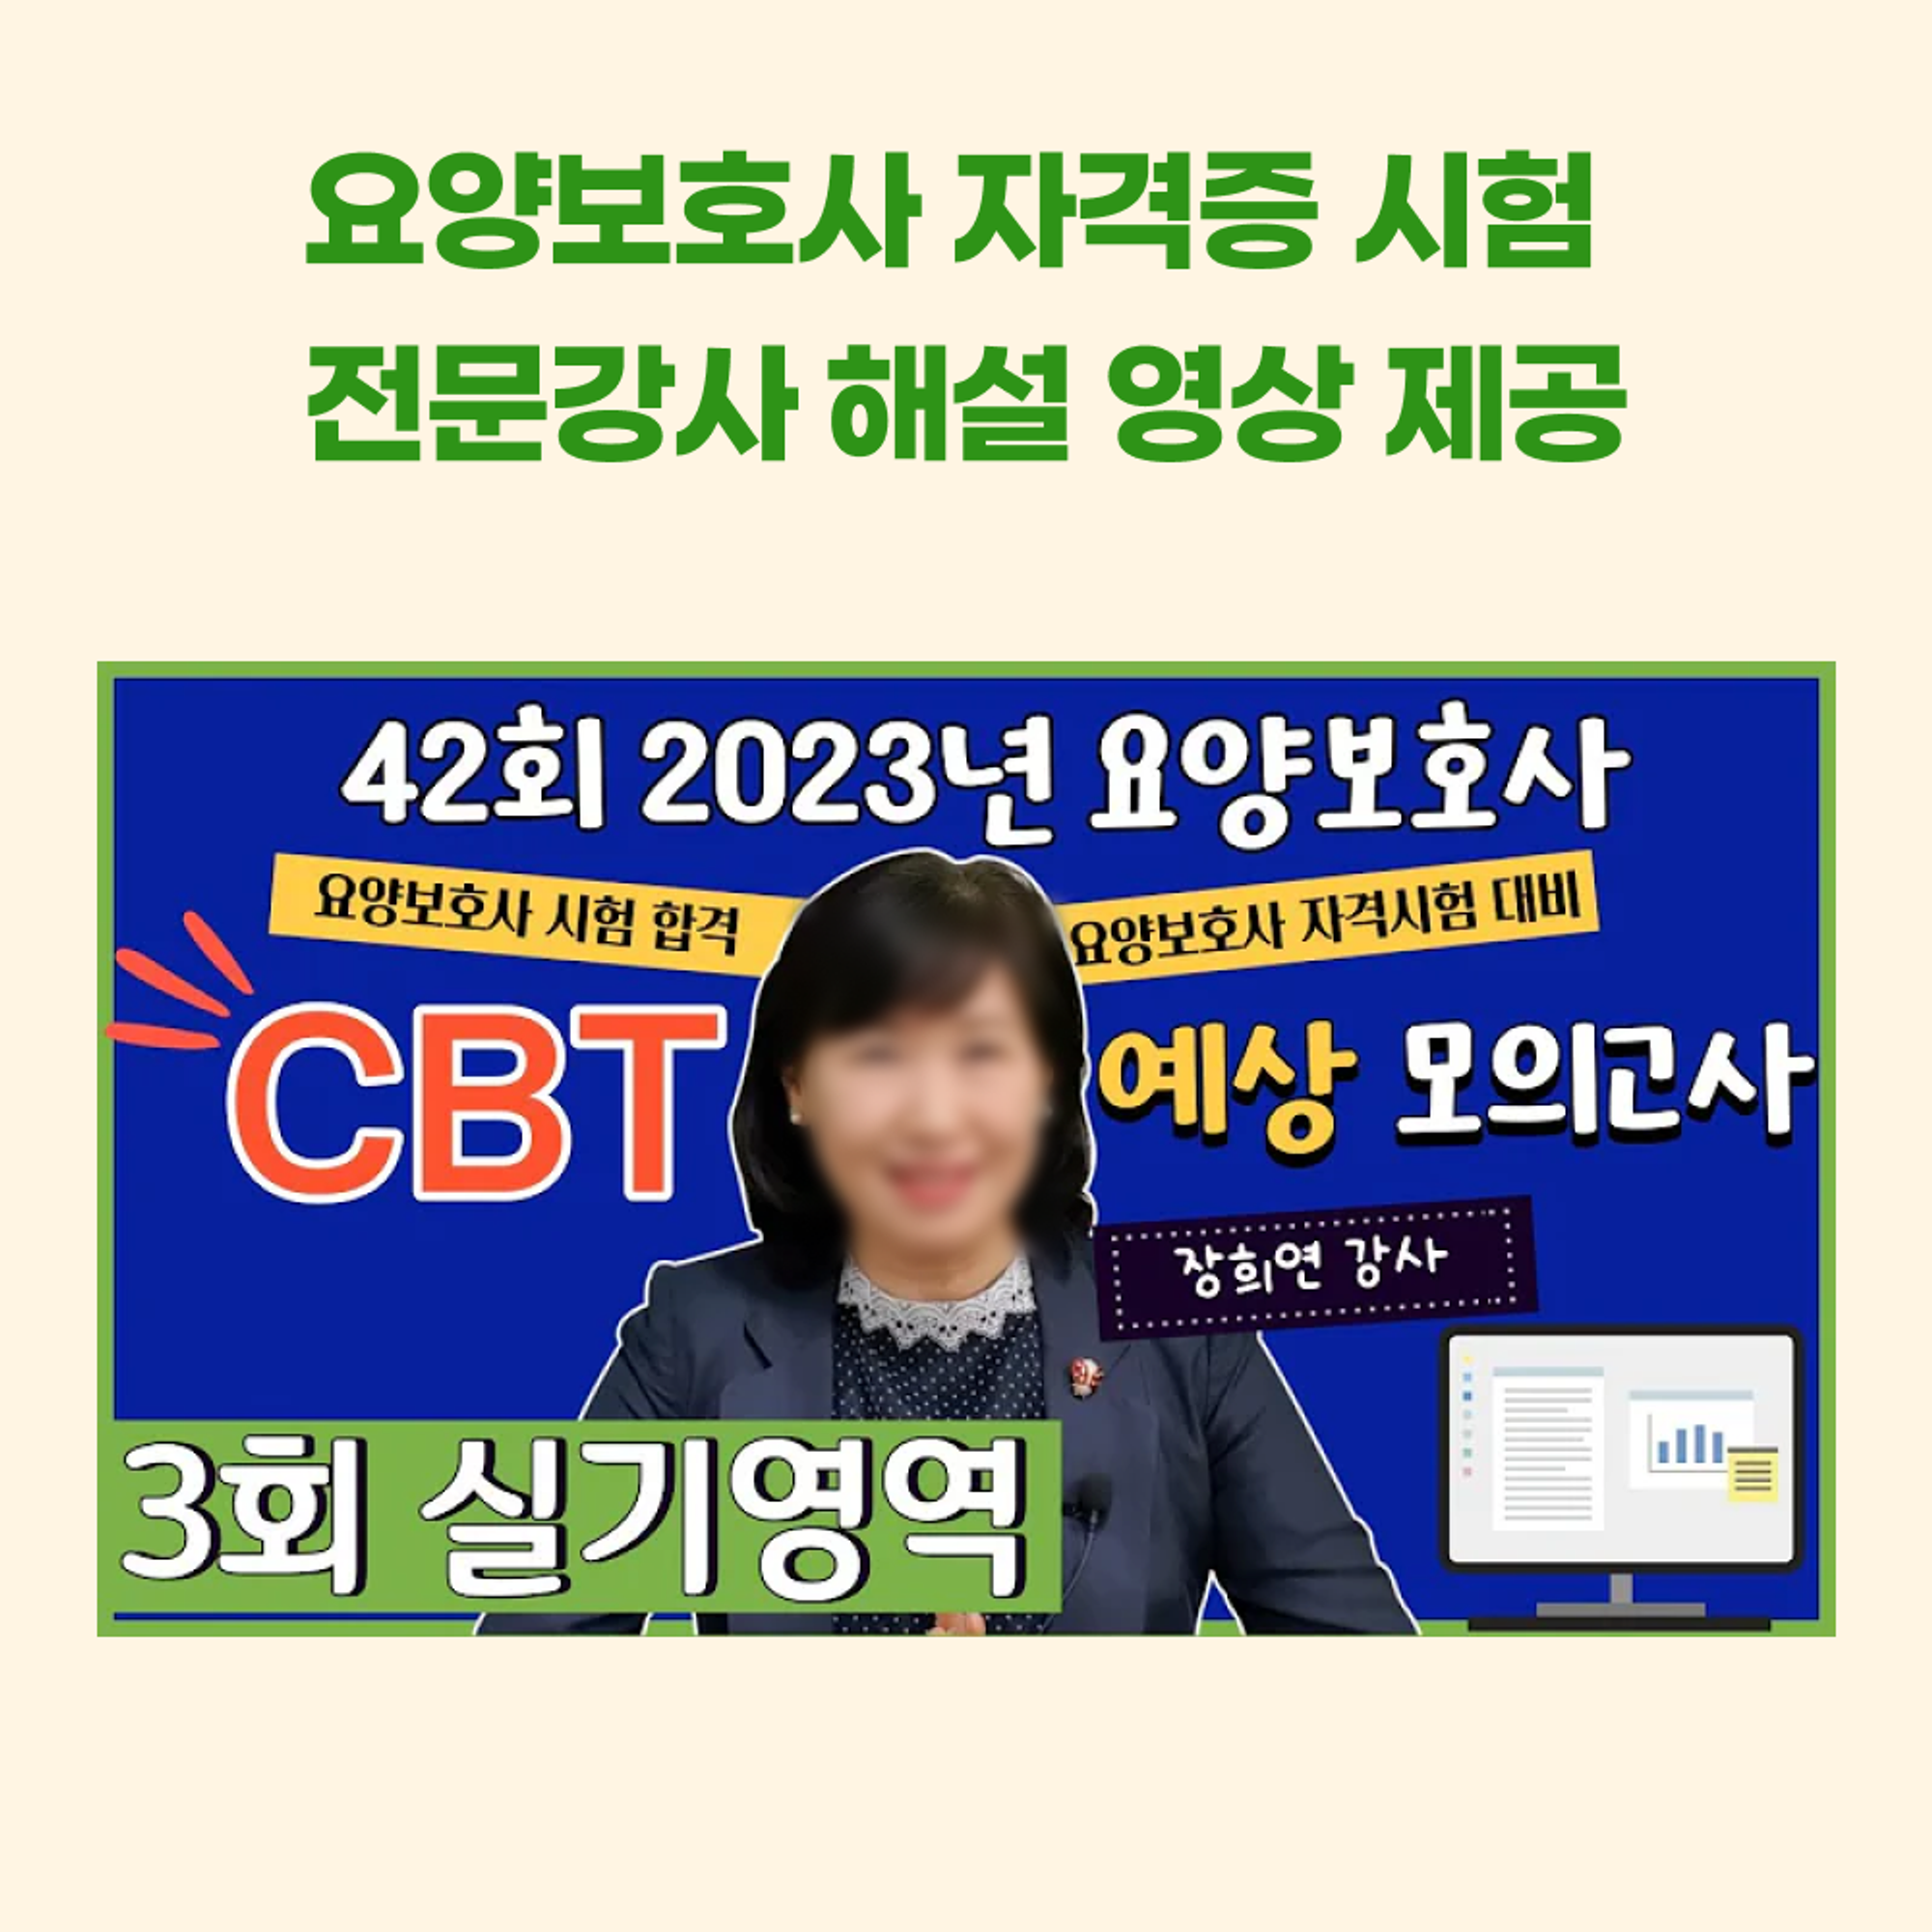 <케어파트너 CBT 소개 6>